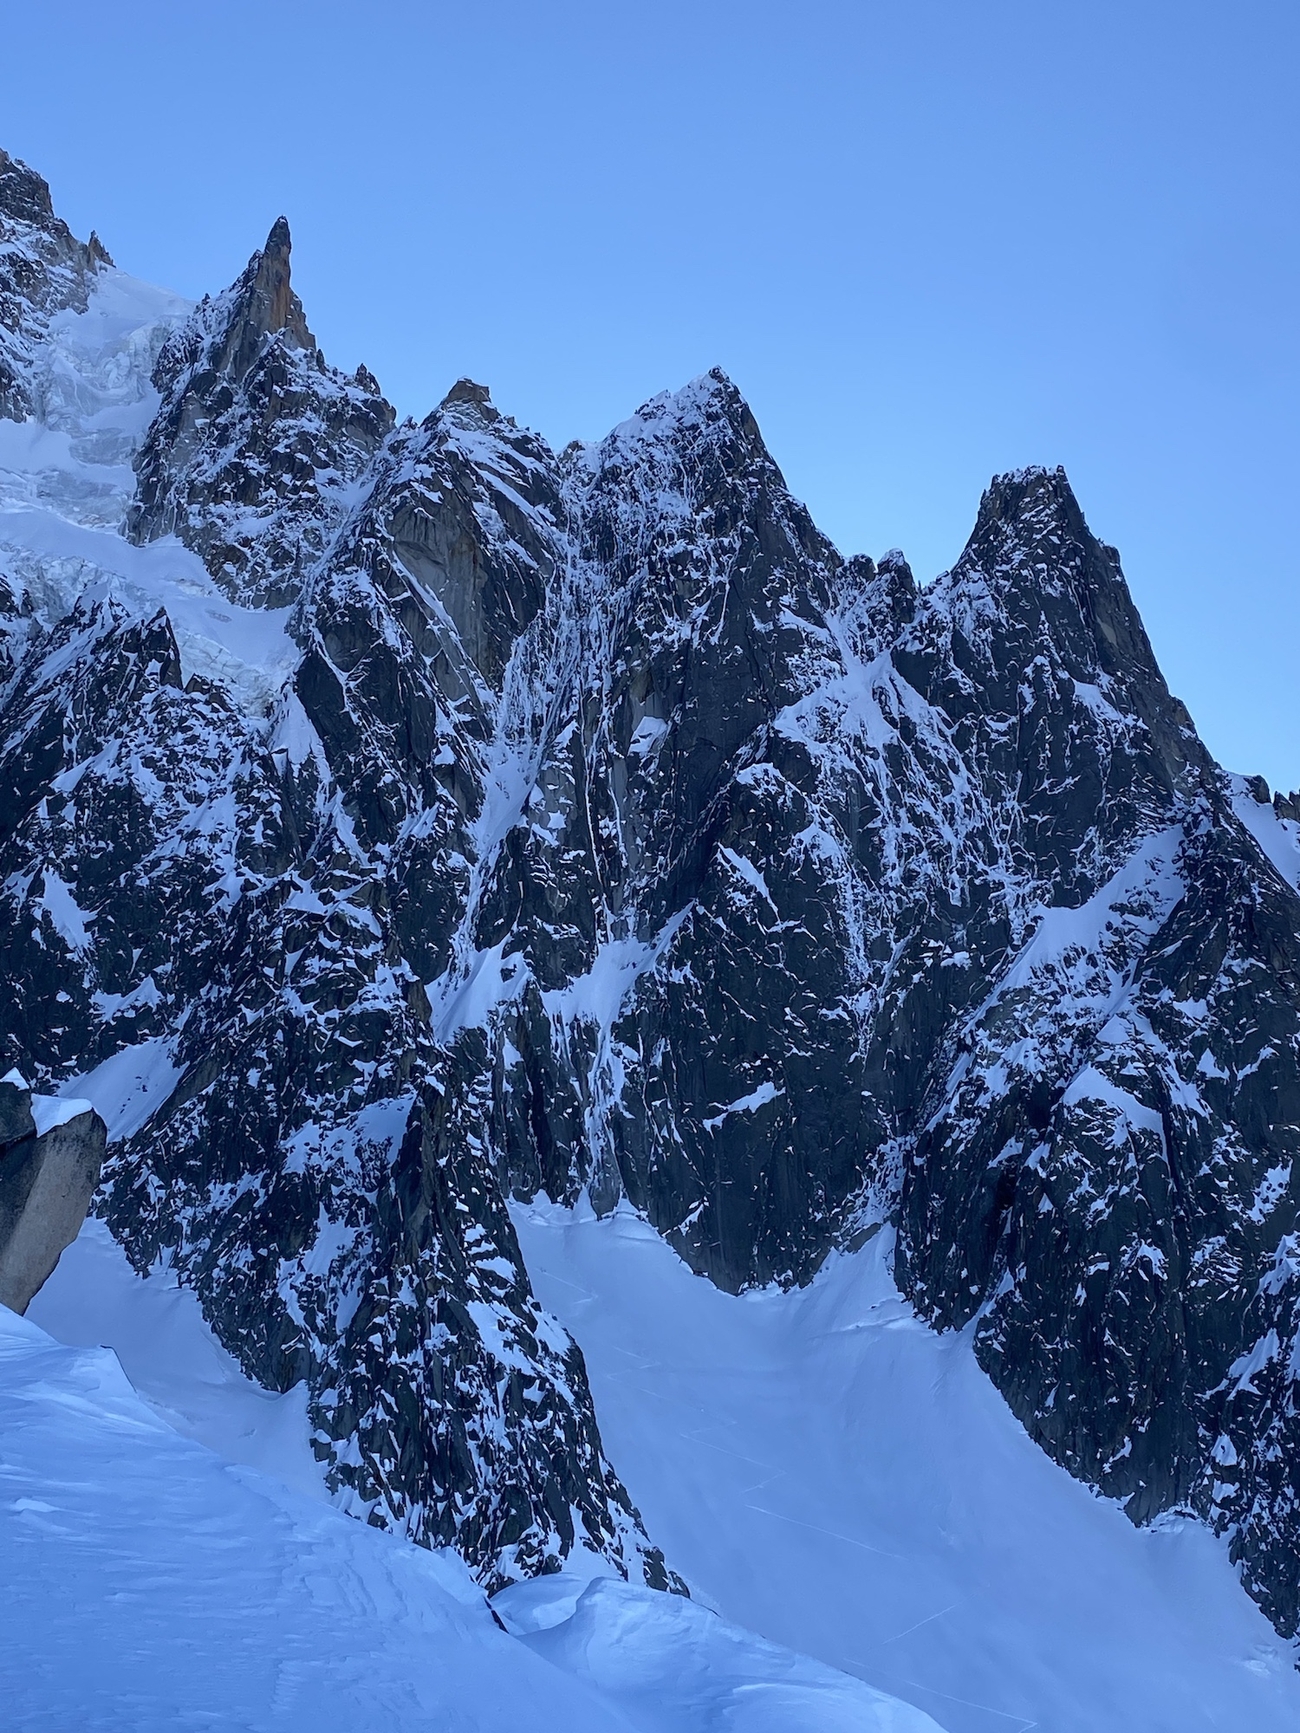 Aiguille des Pèlerins, Mont Blanc, Tom Livingstone, Symon Welfringer